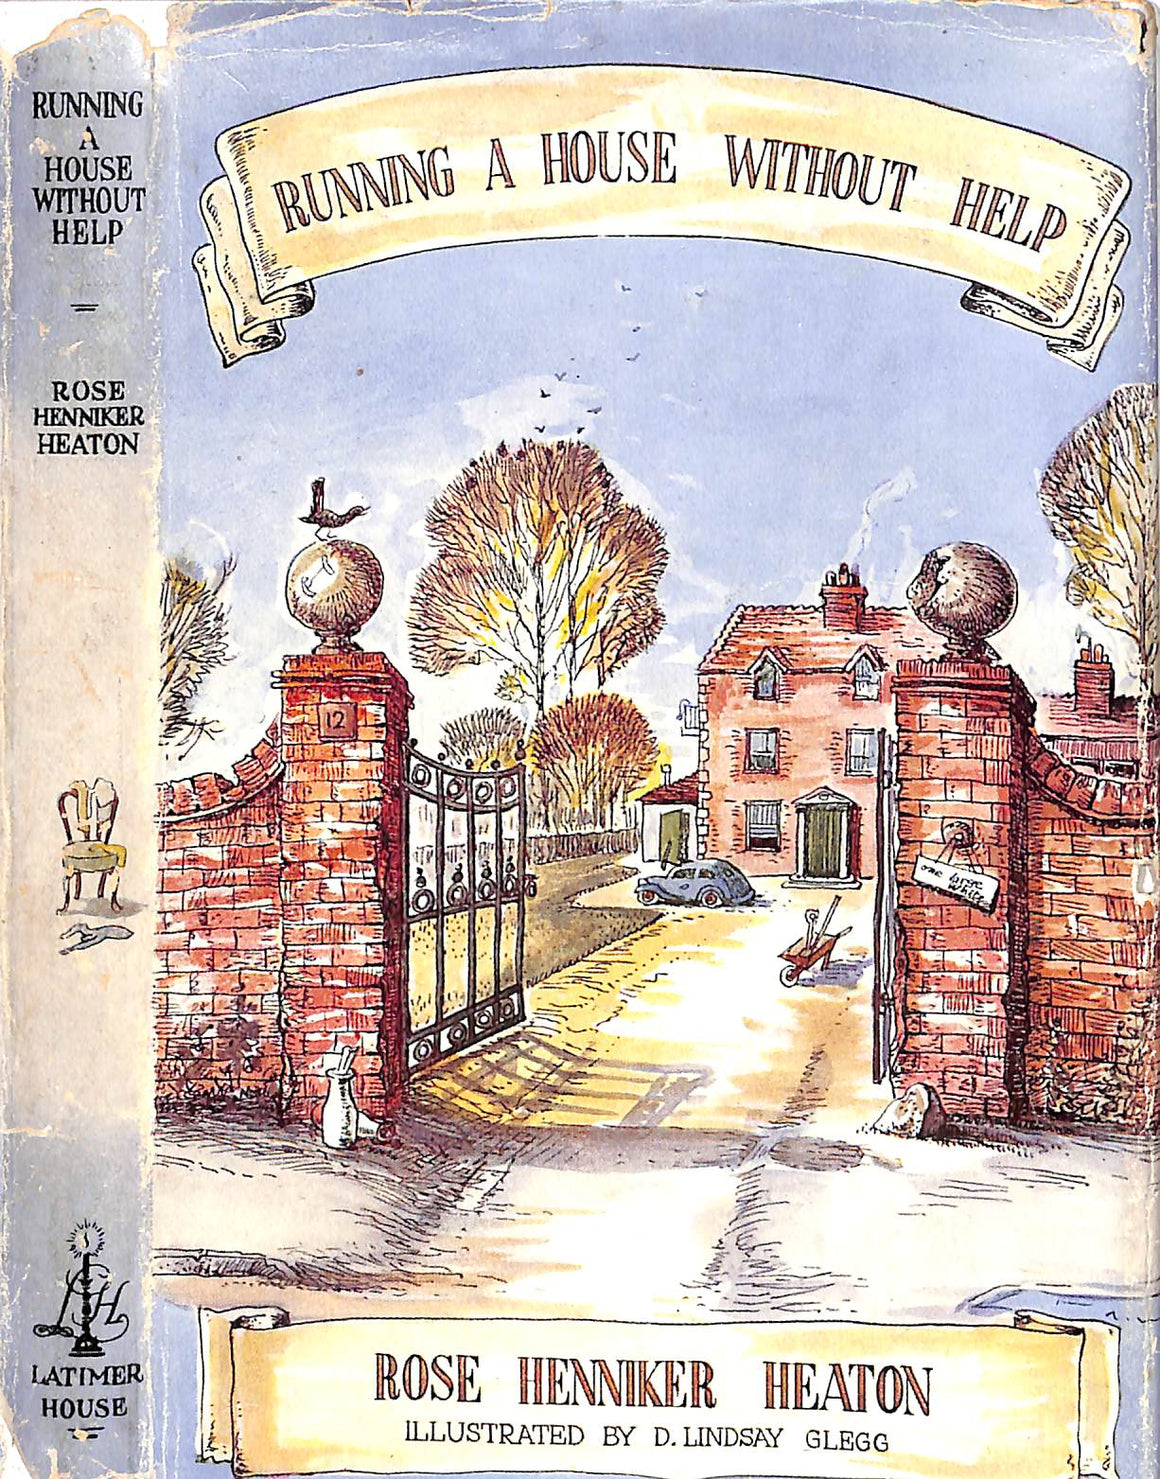 "Running A House Without Help" 1949 HEATON, Rose Henniker